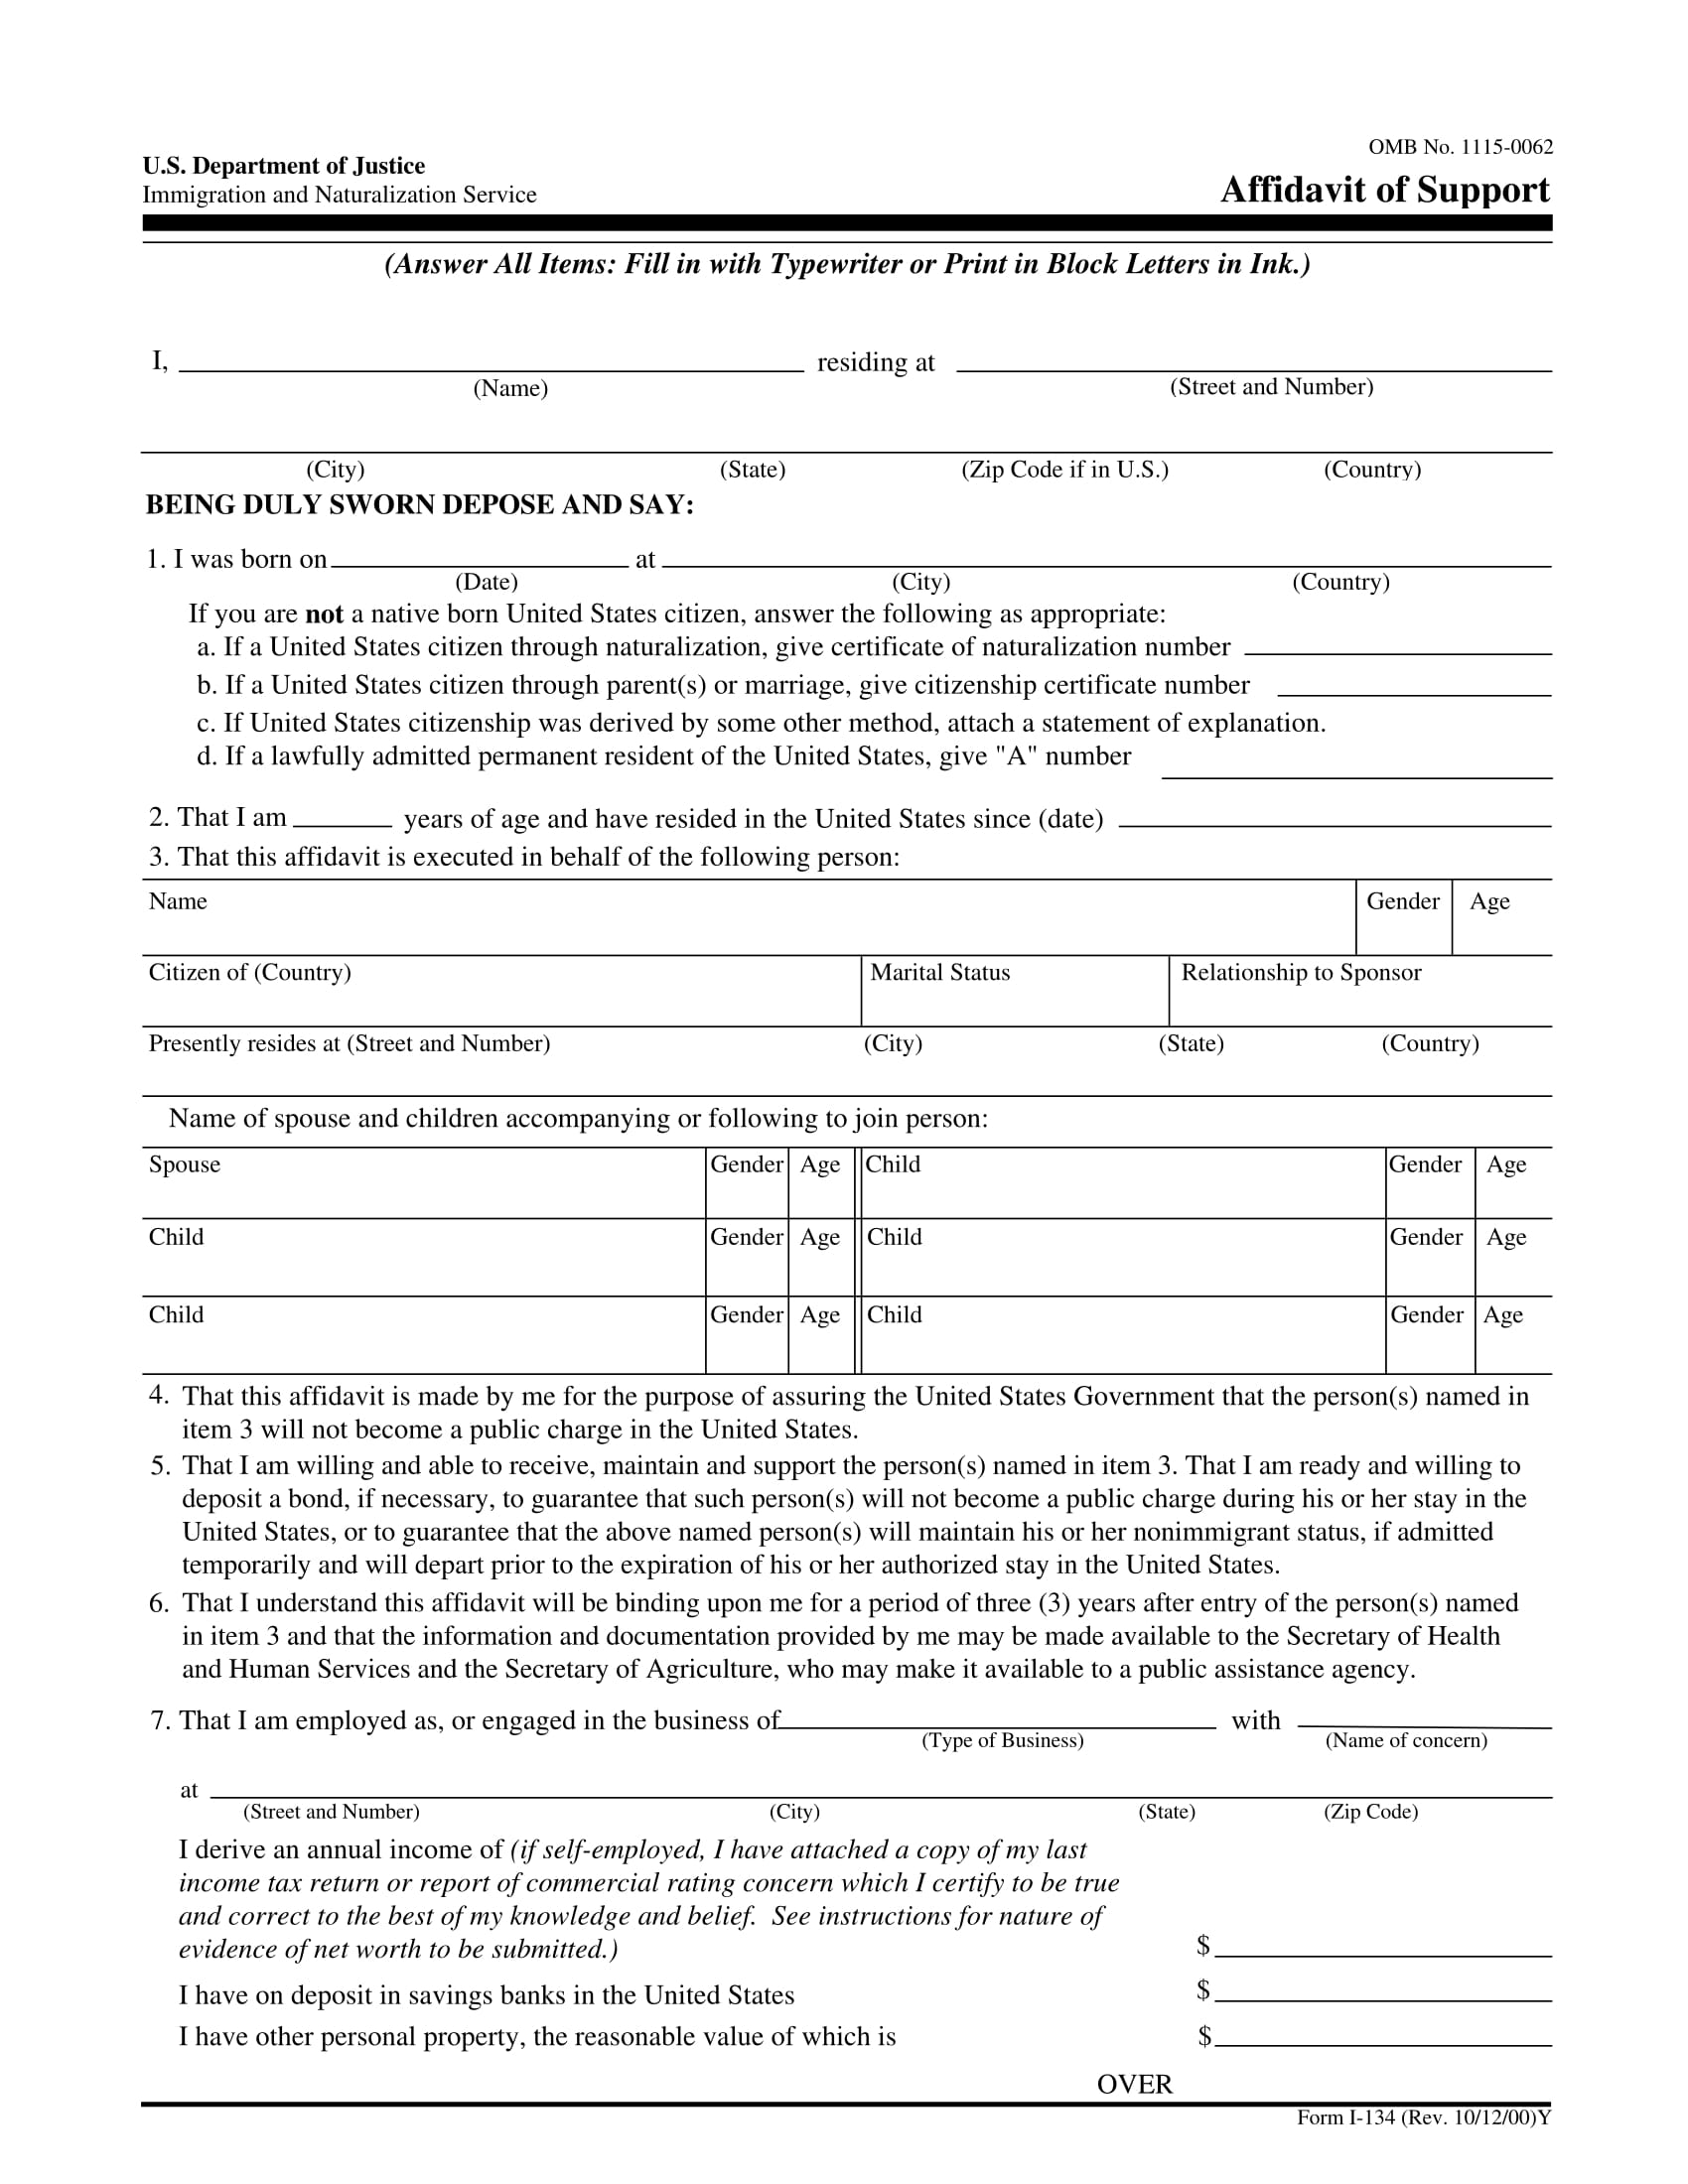 affidavit of support form 1